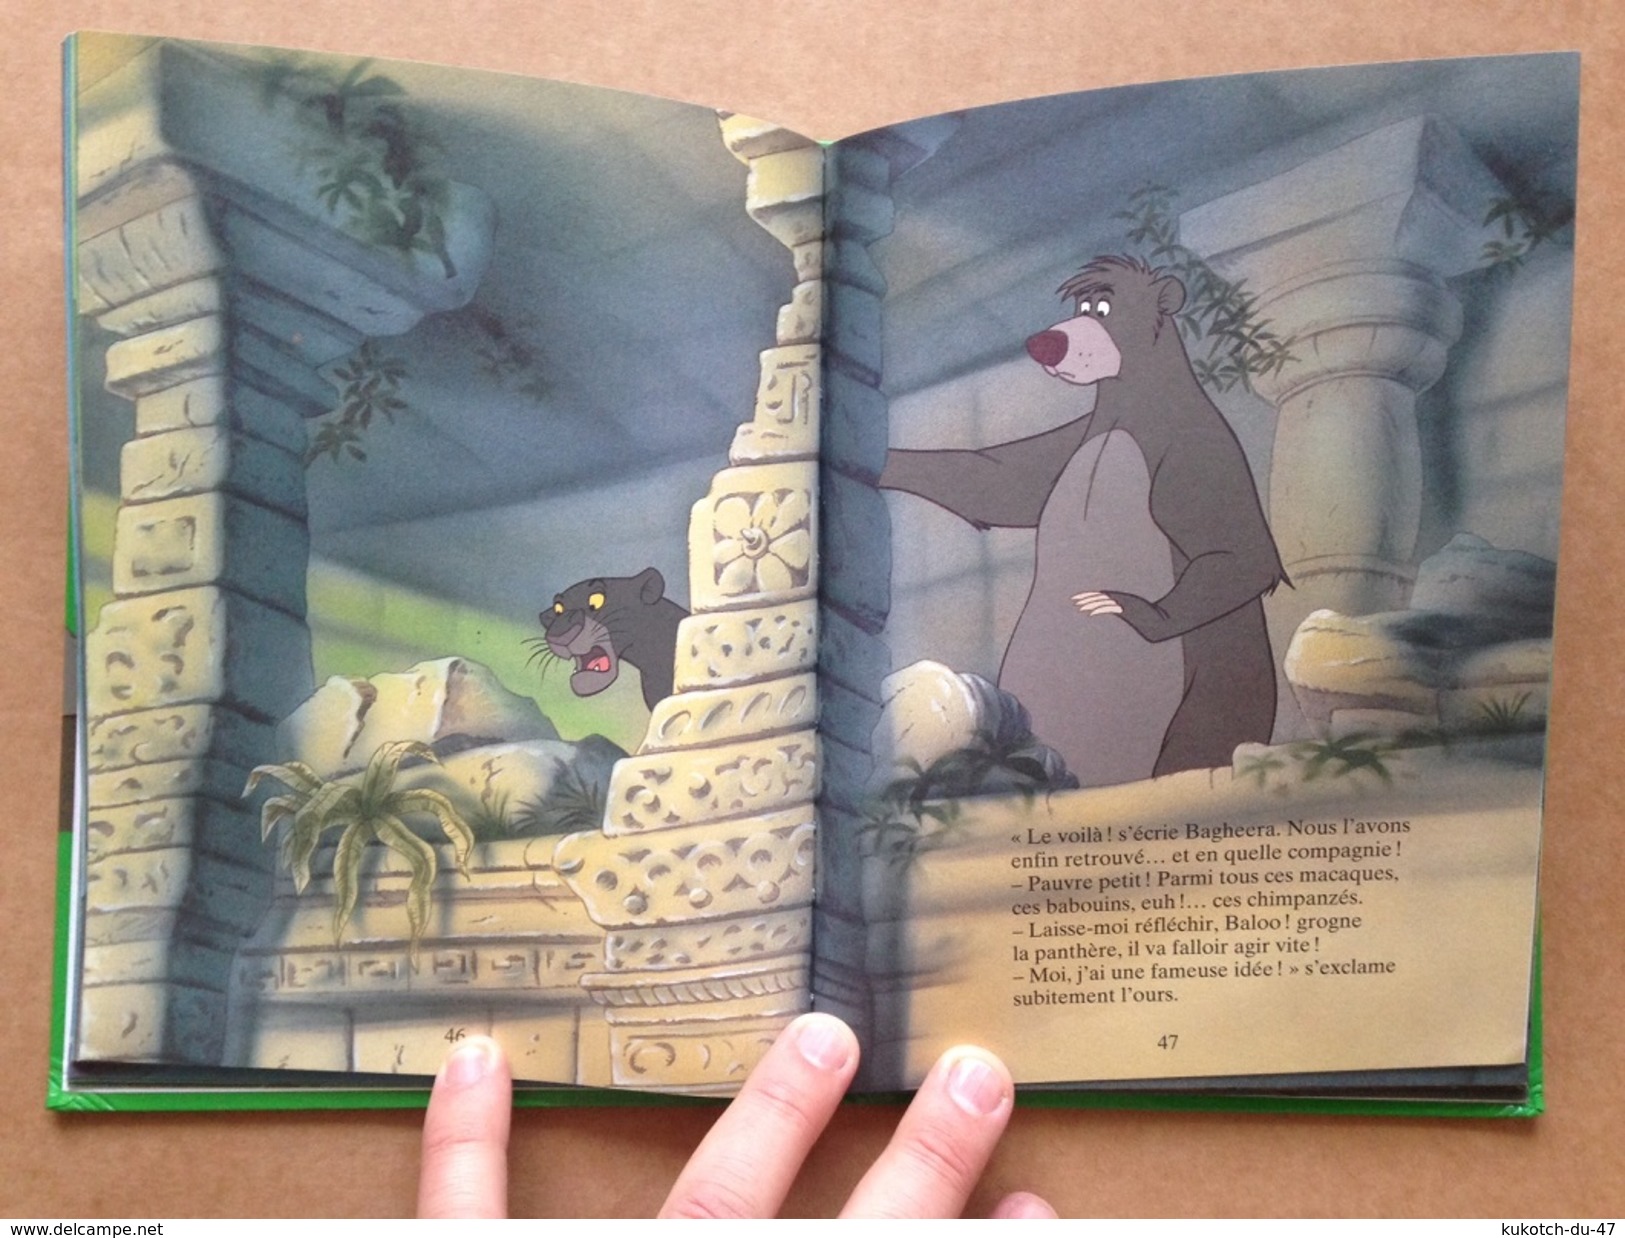 Disney Le livre de la jungle (1998)